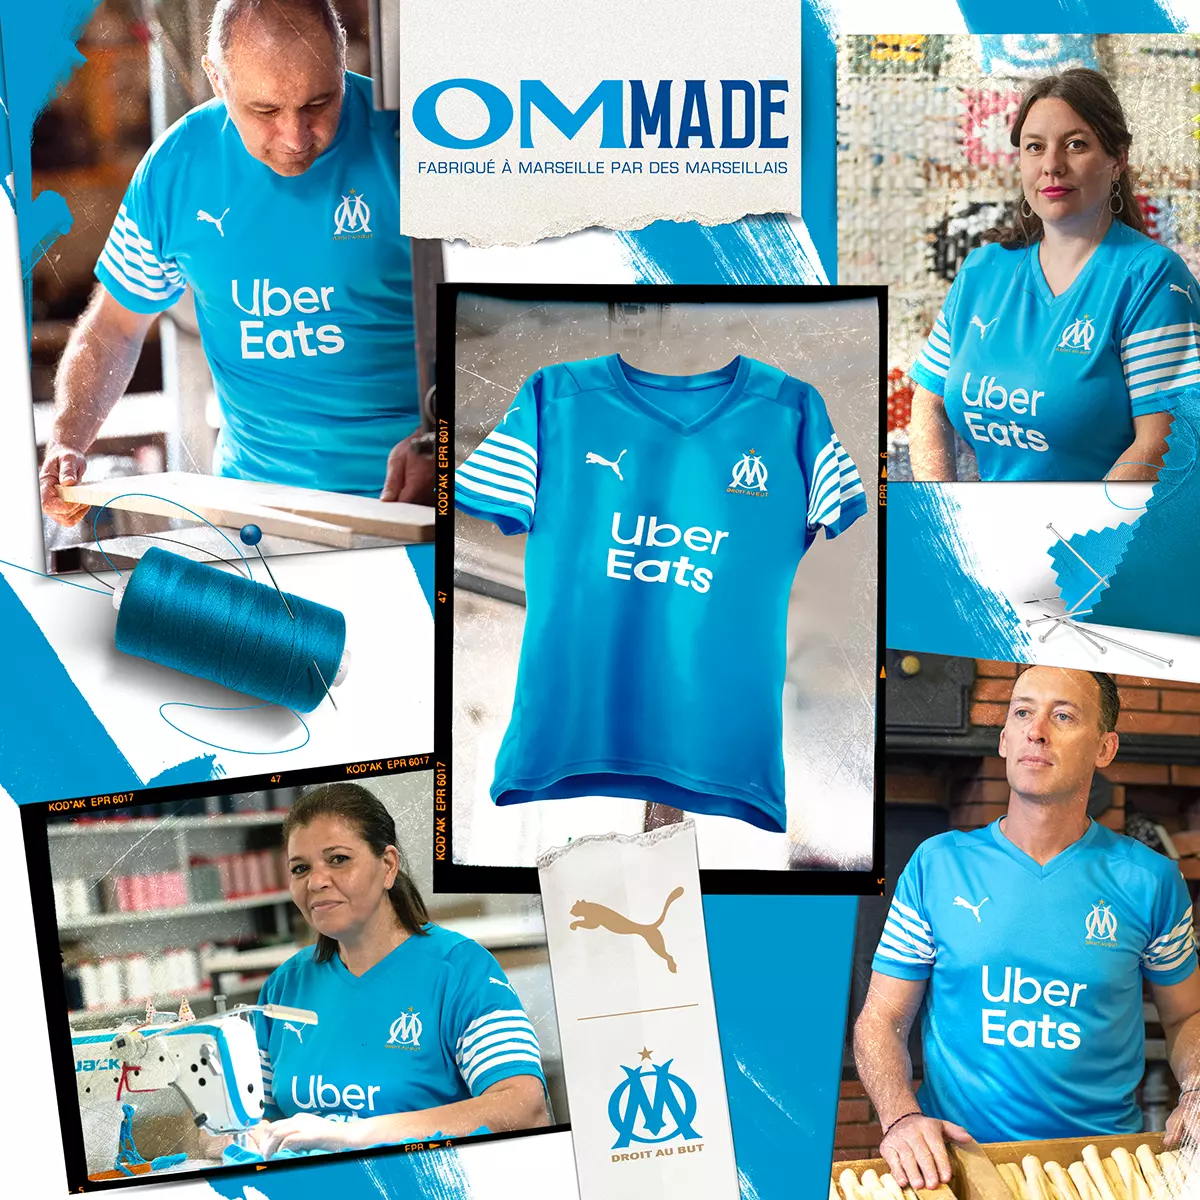 PUMA Football x Olympique de Marseille - Maillot collector "OM Made"